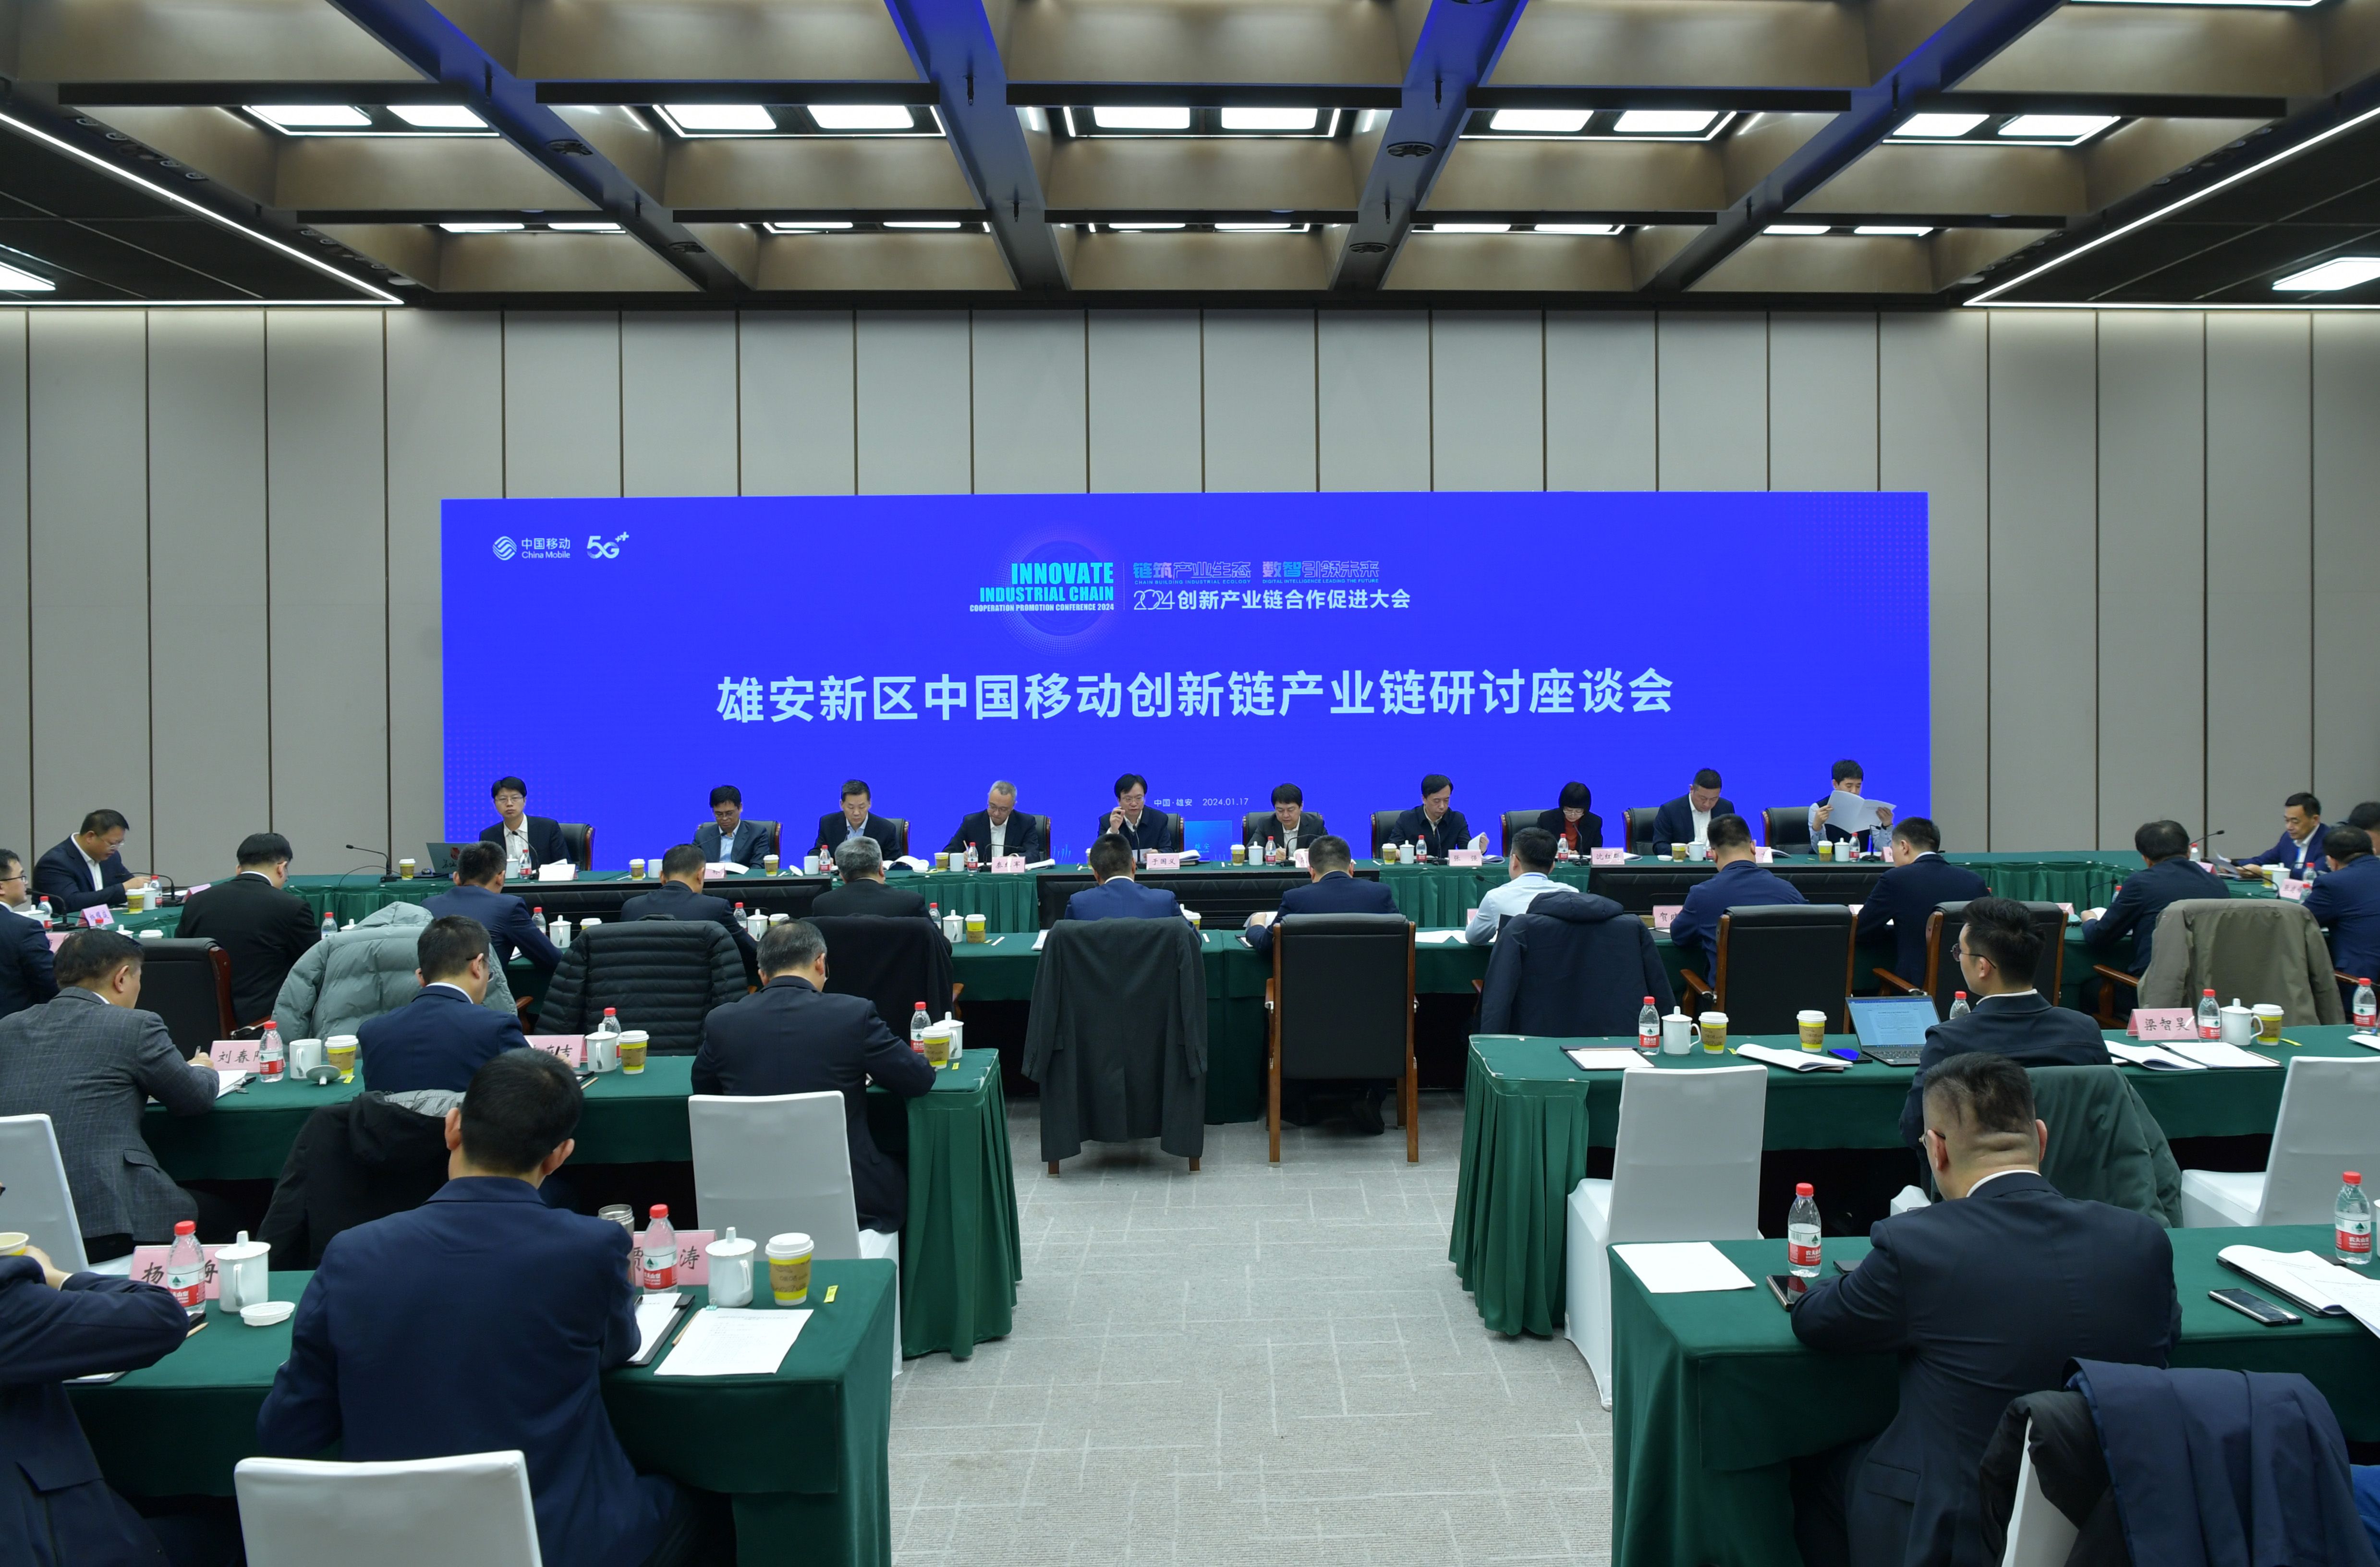 “聚要素、落产业、建生态” 雄安新区中国移动创新链产业链研讨座谈会举行 世界热议